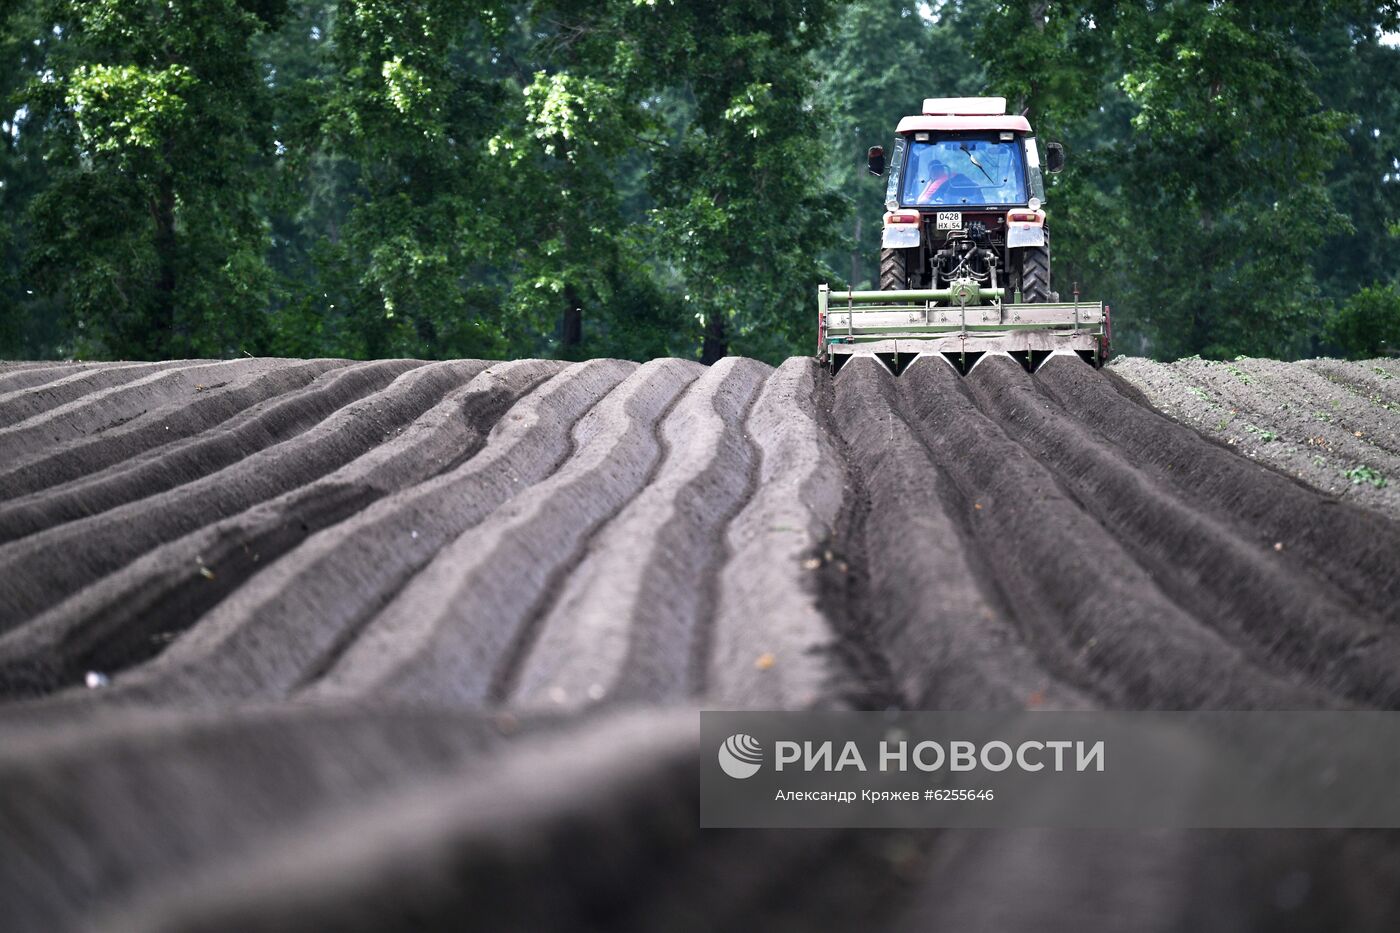 Сельскохозяйственное предприятие "Мичуринец" в Новосибирской области